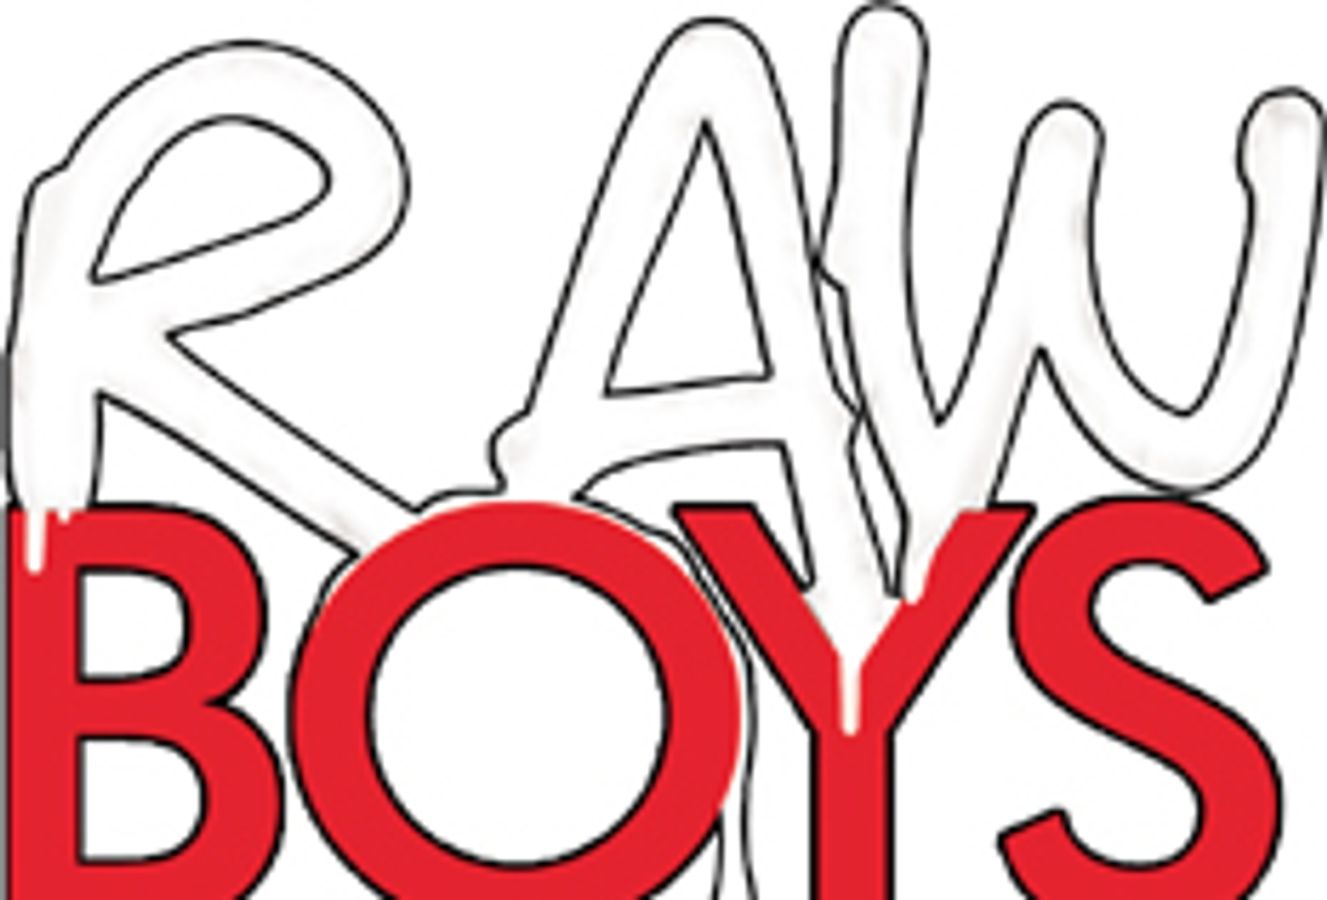 Raw Boys